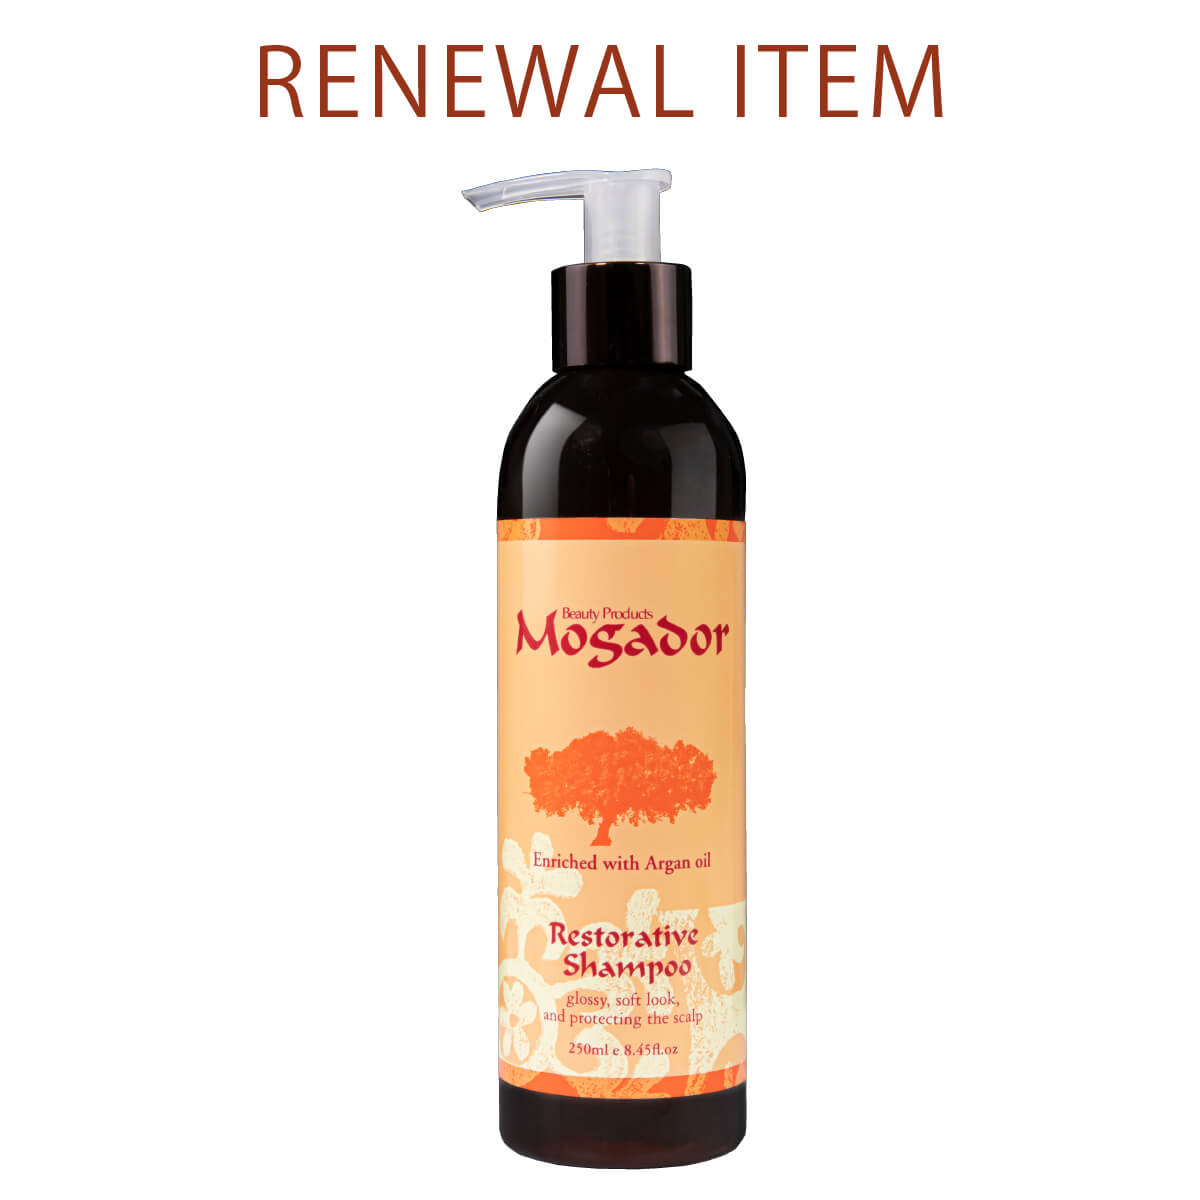 RENEWAL Mogador hair shampoo 250ml|JAS Organic Complex |日本限定 新し香りにリニューアル